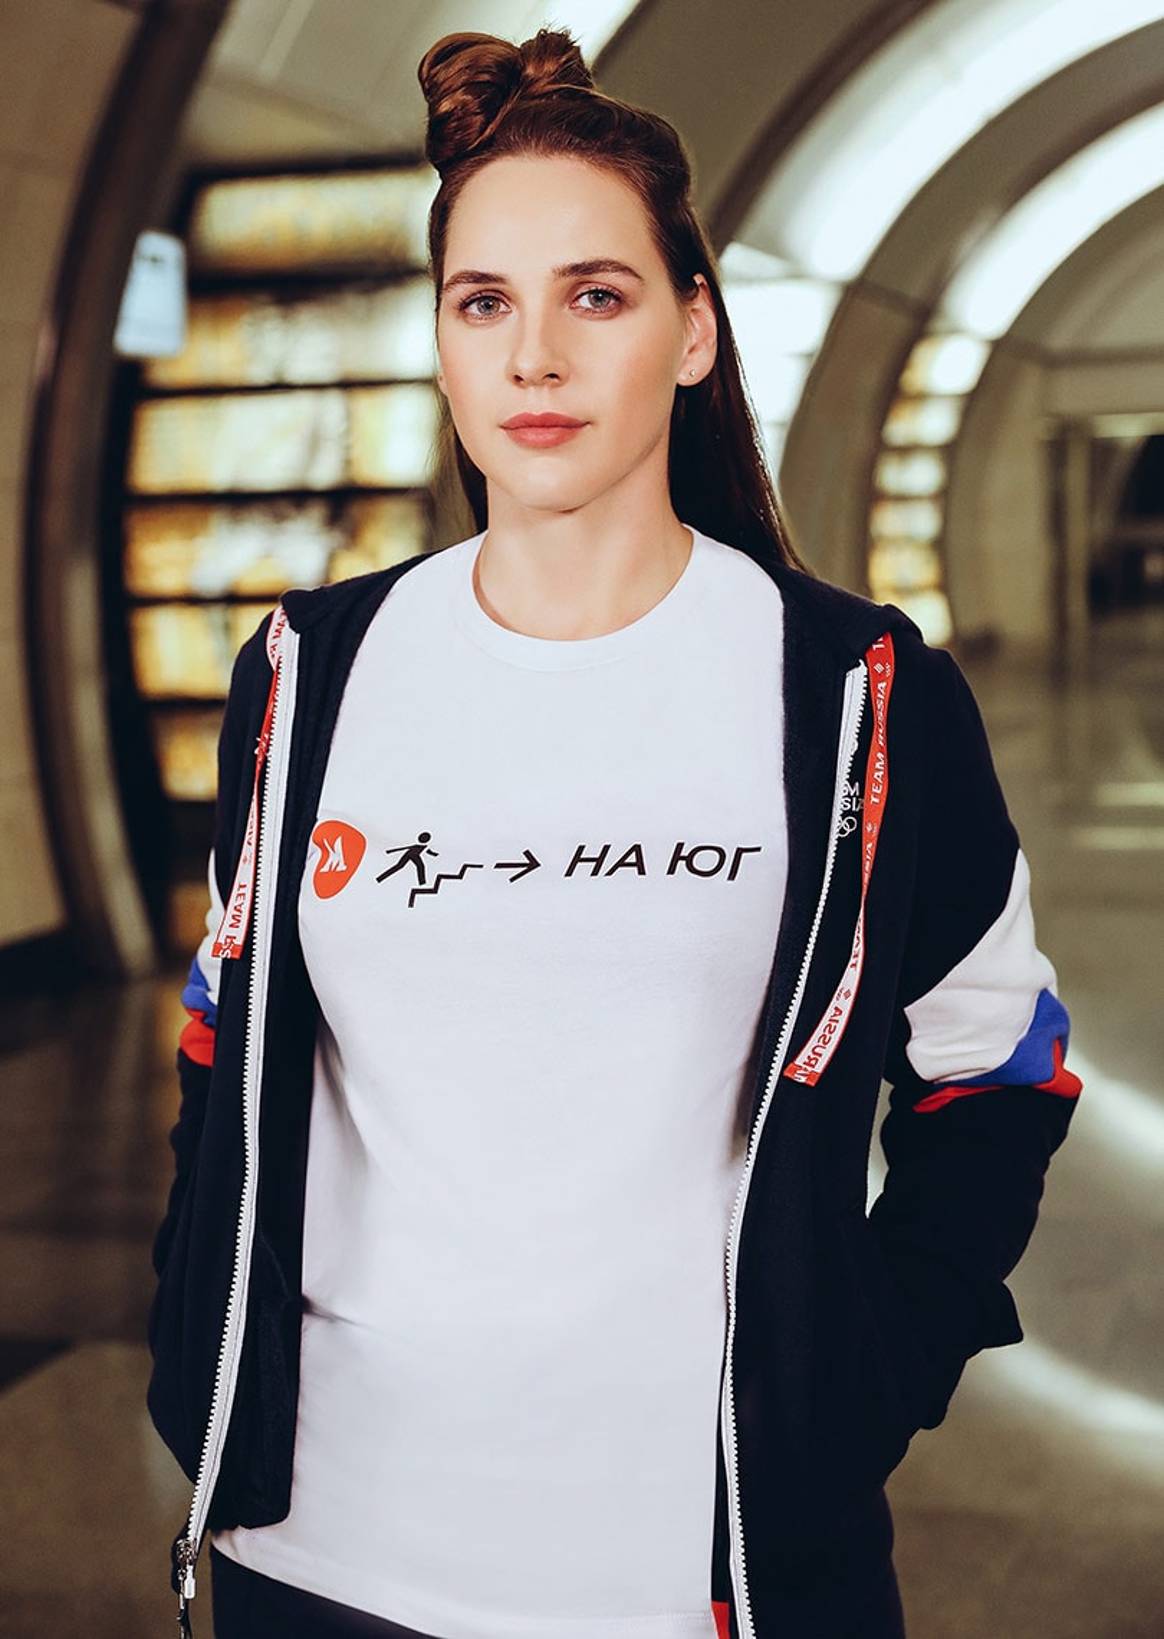 Московский метрополитен выпустил линейку одежды совместно с Zasport